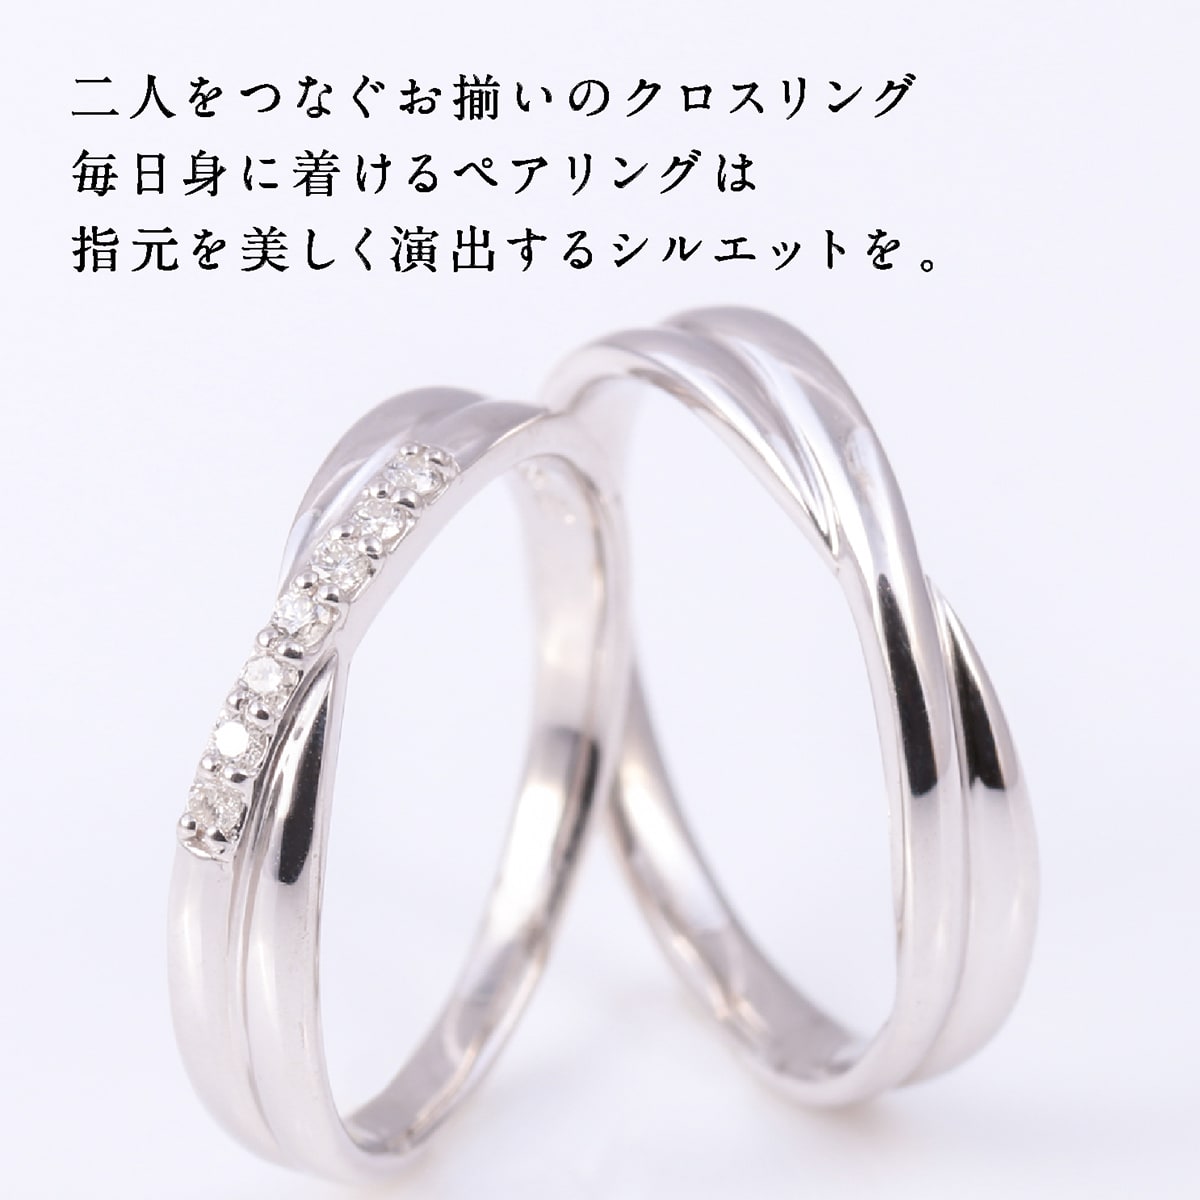 エタニティリング・結婚指輪・K10ゴールド・ダイヤモンド・リング・マリッジリング ブライダルジュエリー・アクセサリー | sanignacio